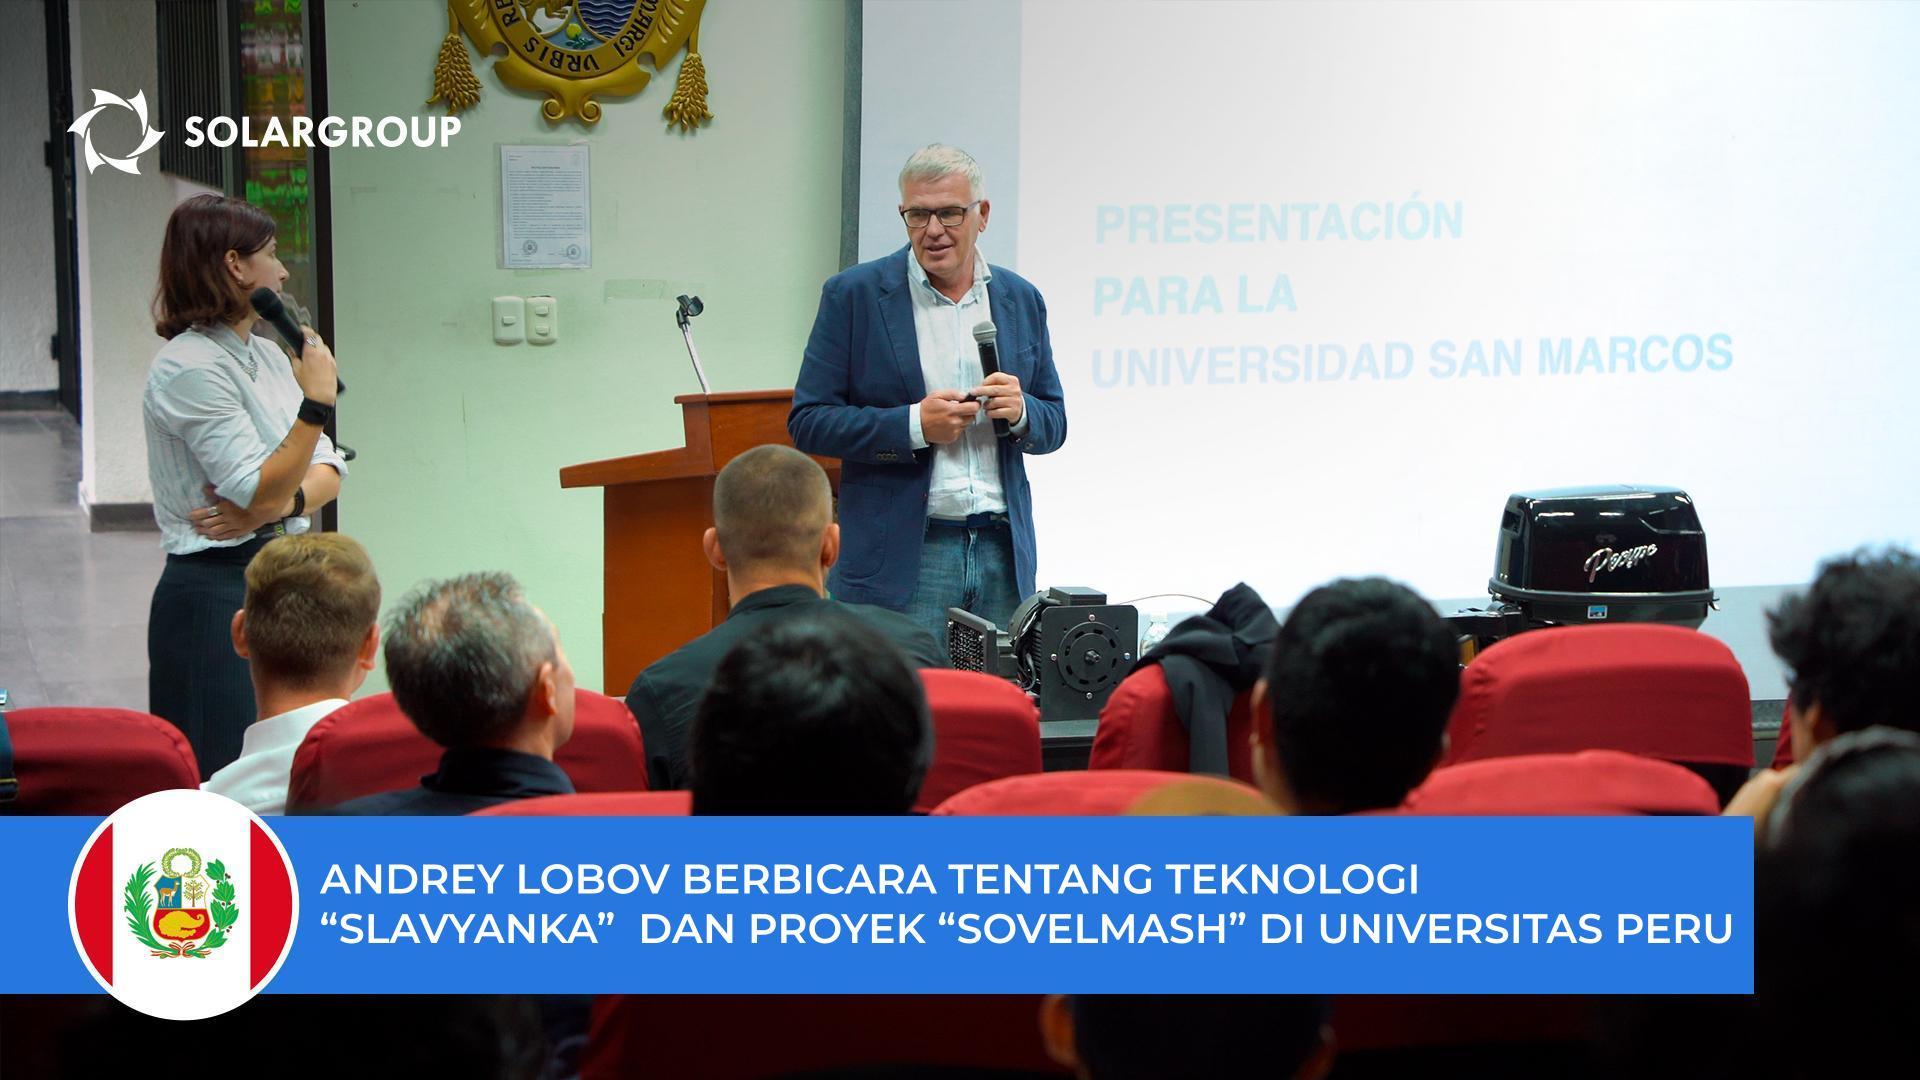 Andrey Lobov berbicara tentang teknologi "Slavyanka" dan proyek "Sovelmash" kepada para mahasiswa dan profesor di Universitas San Marcos